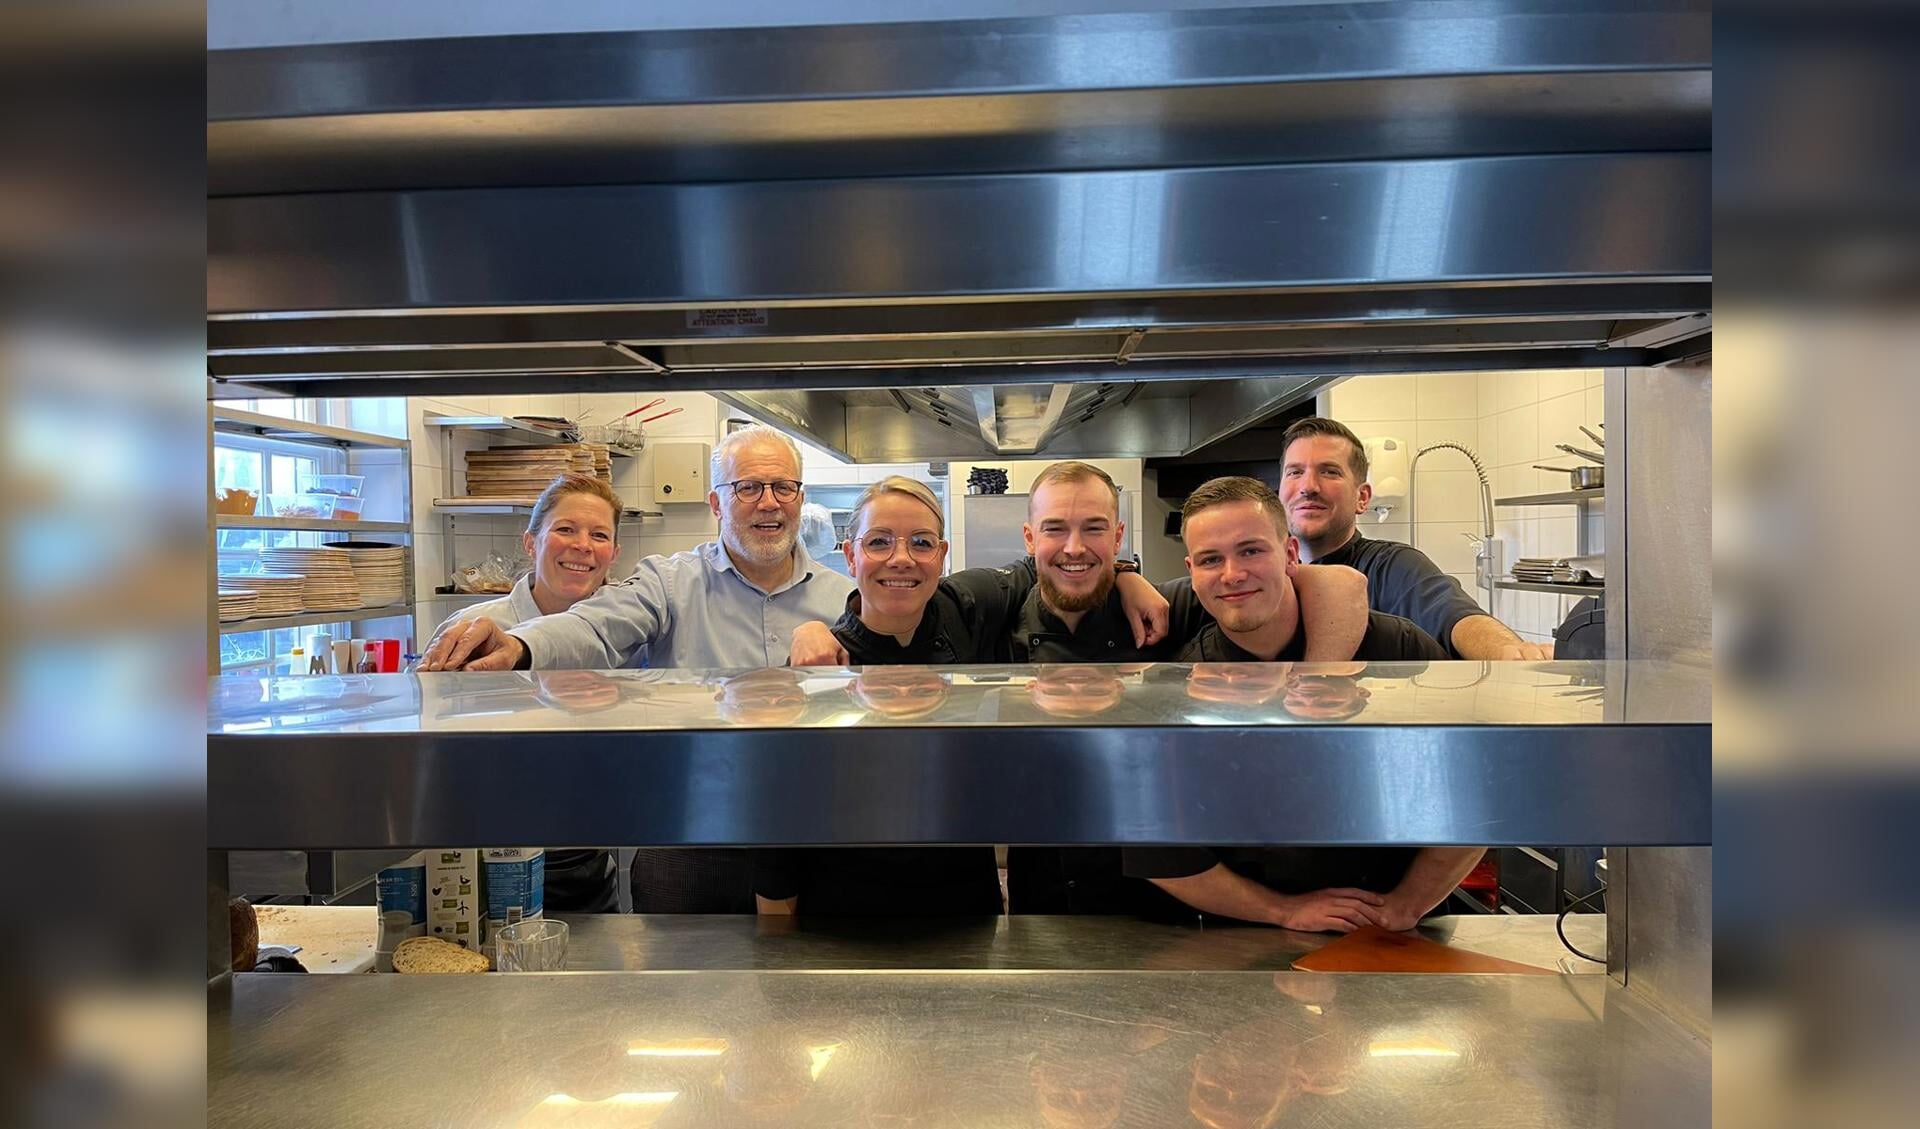 Dankzij dit hechte team is Grand Café en Restaurant Bij5 momenteel het slimste bedrijf van Nederland van deze maand!